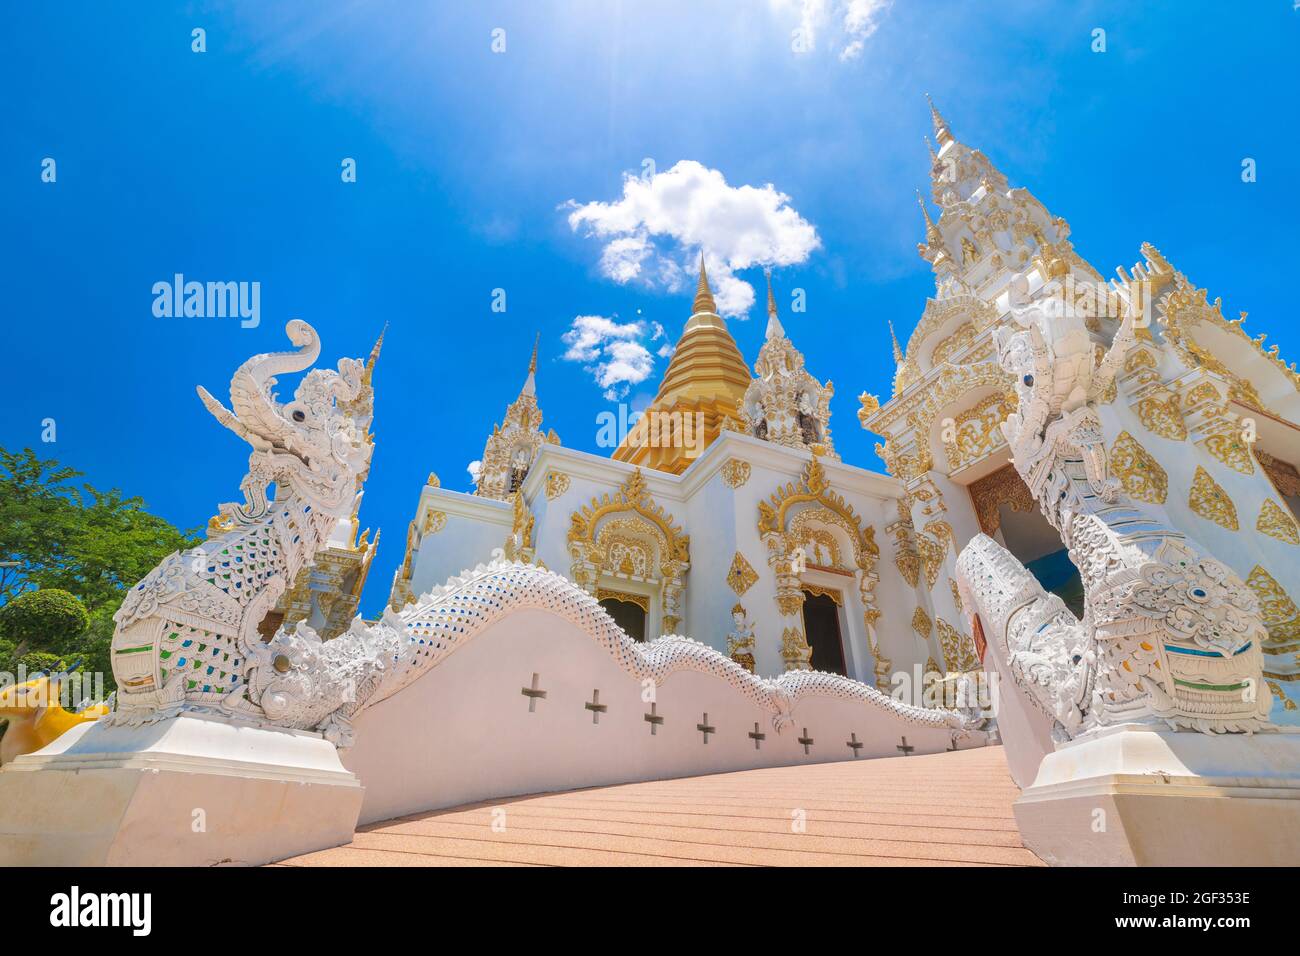 Wat See don moon.The Beautiful Temple è un'attrazione turistica del nord chiangmai, Thailandia. Foto Stock